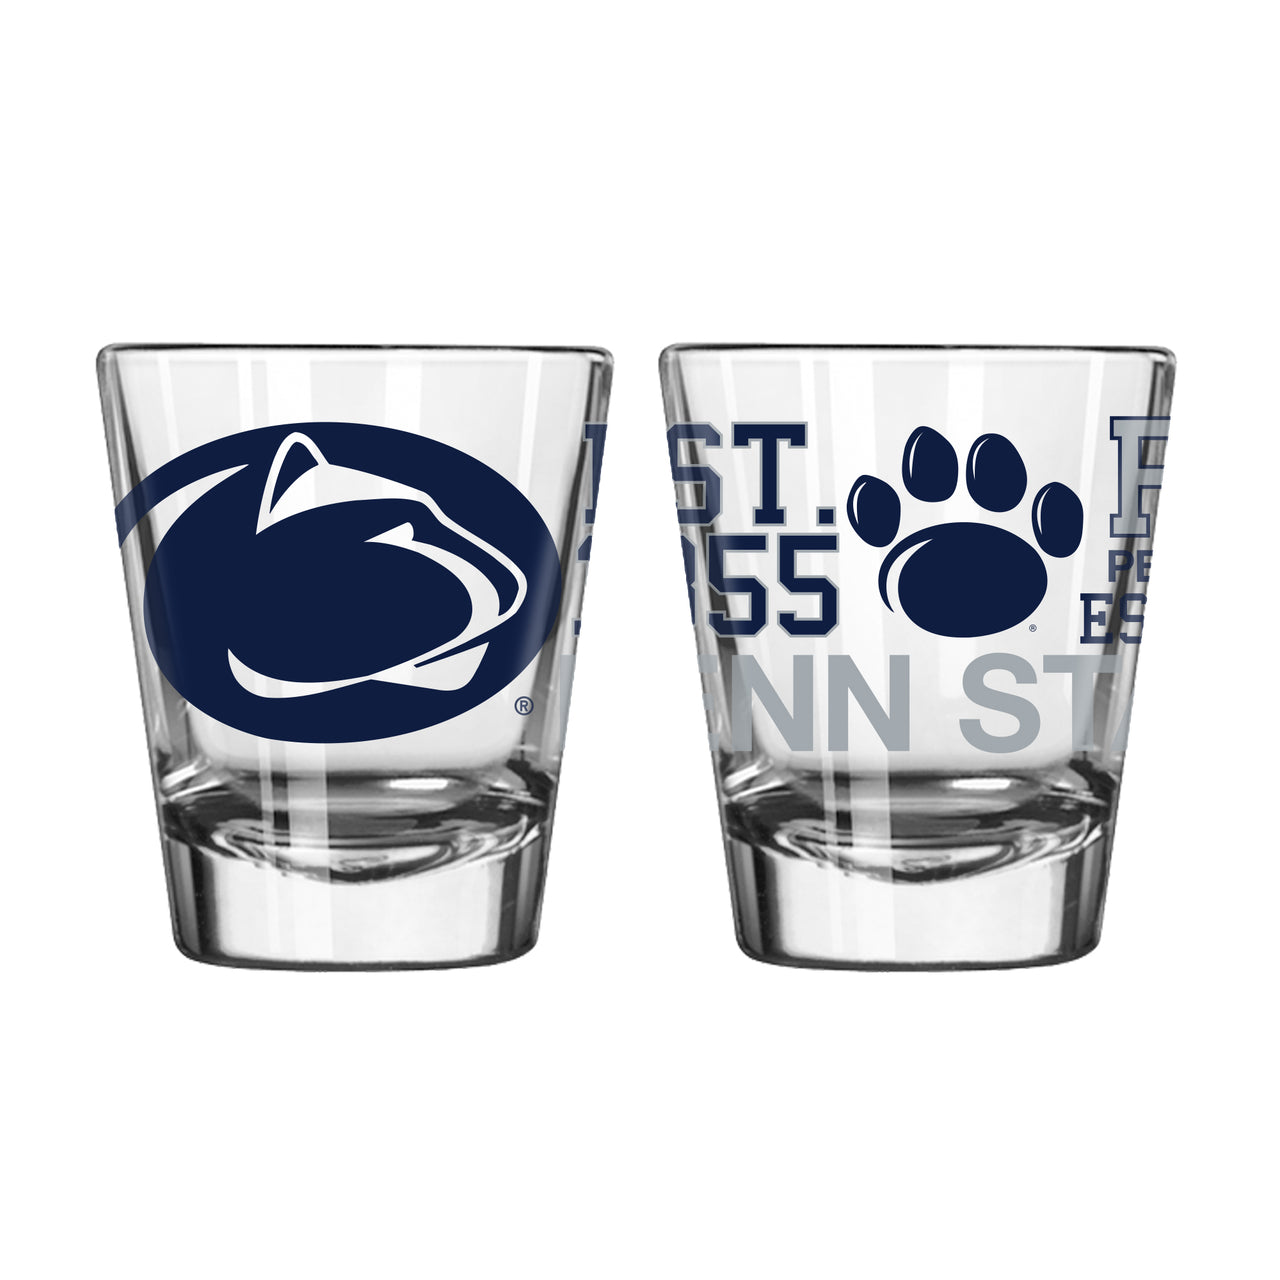 Penn State Nittany Lions Spirit Shot Glass - Dynasty Sports & Framing 